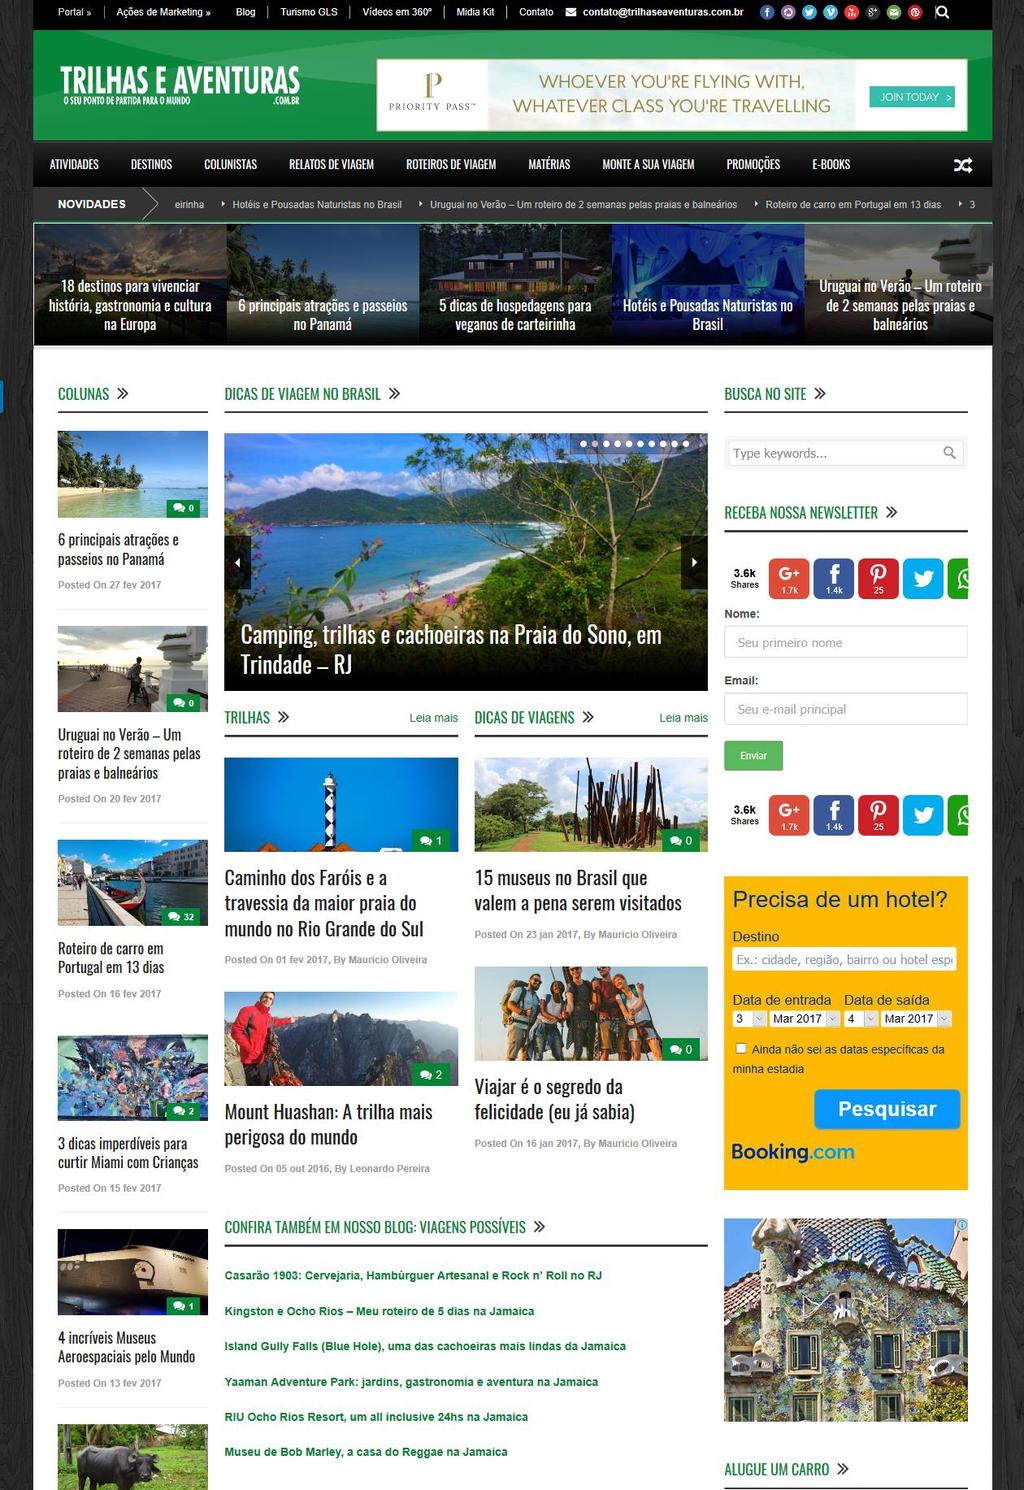 SOBRE O TRILHAS E AVENTURAS O Trilhas e Aventuras é um portal colaborativo de turismo, ponto de encontro e referência para quem gosta de viajar pelo Brasil